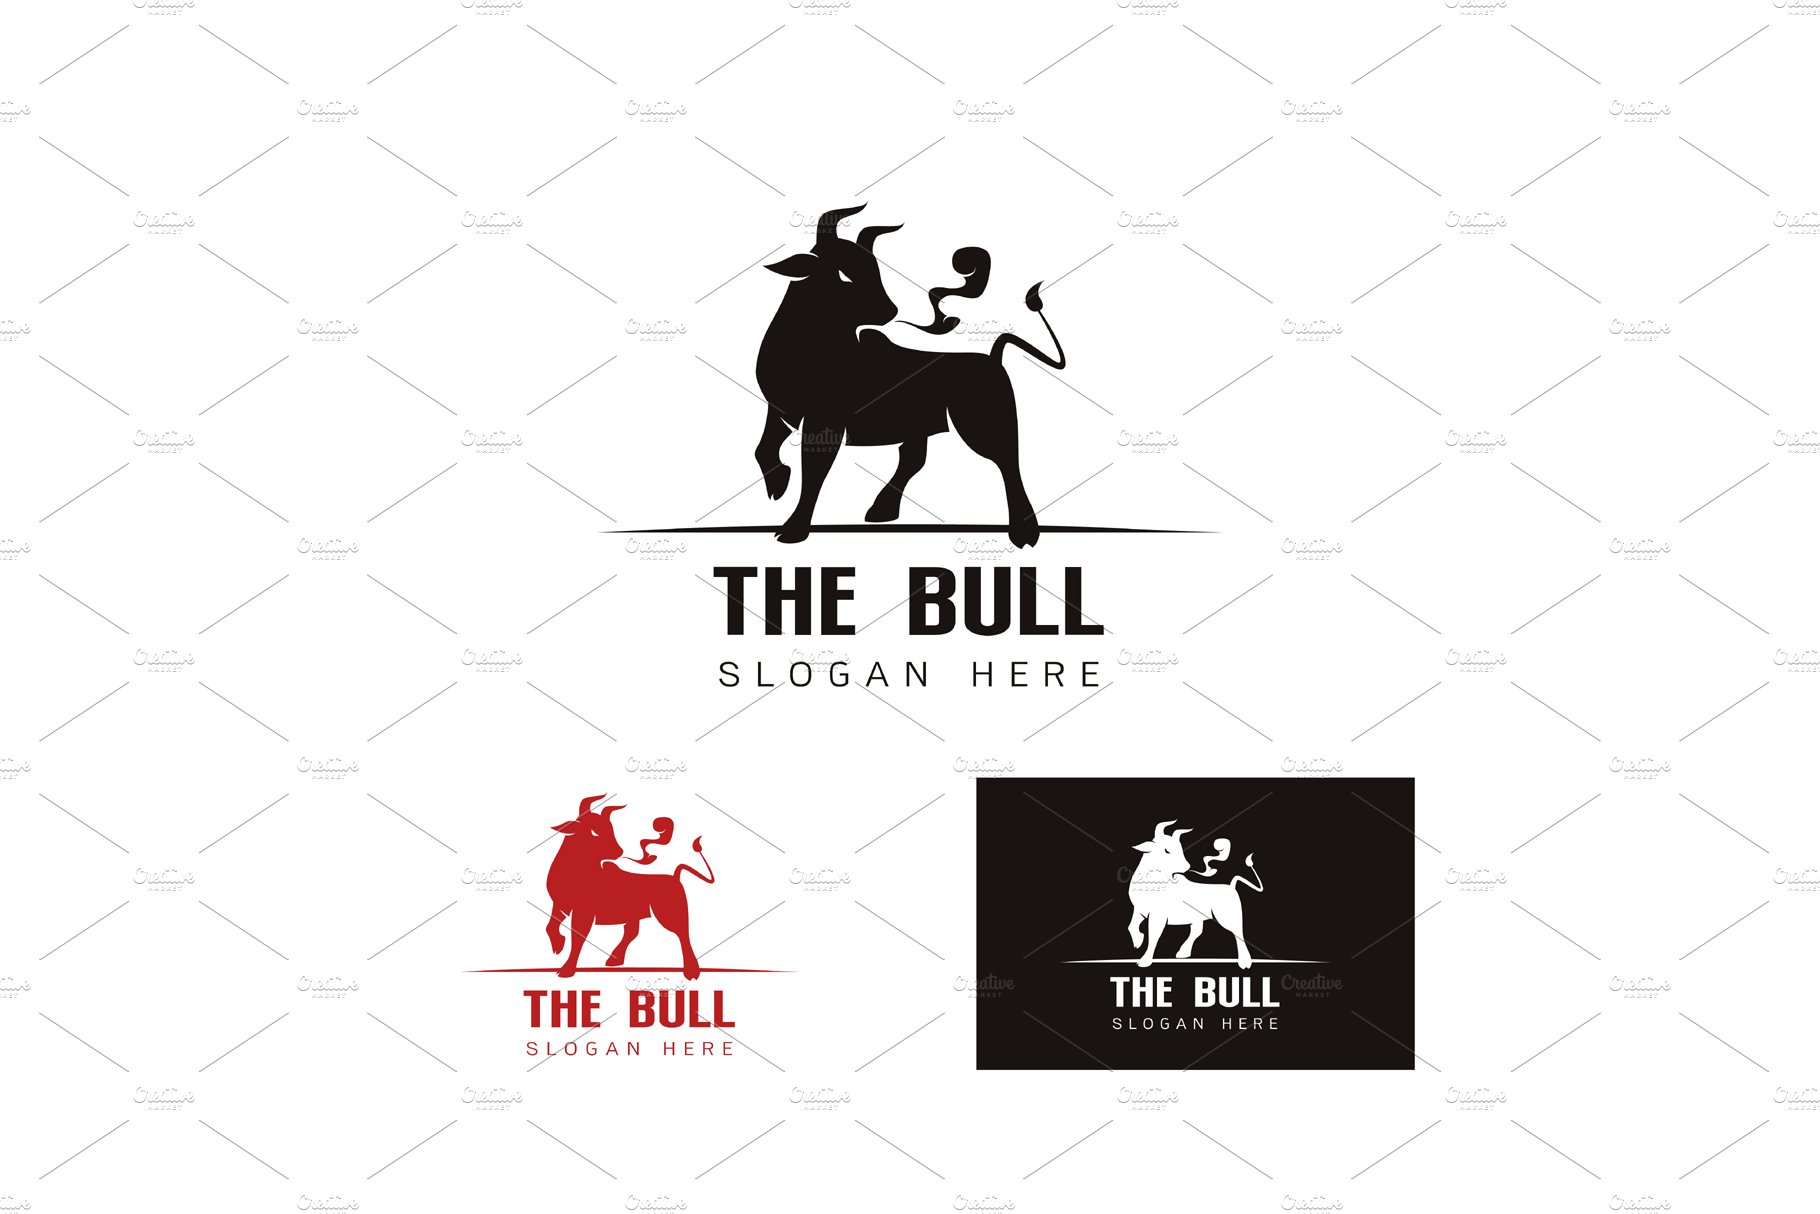 Elegant of the Bull logo template cover image.